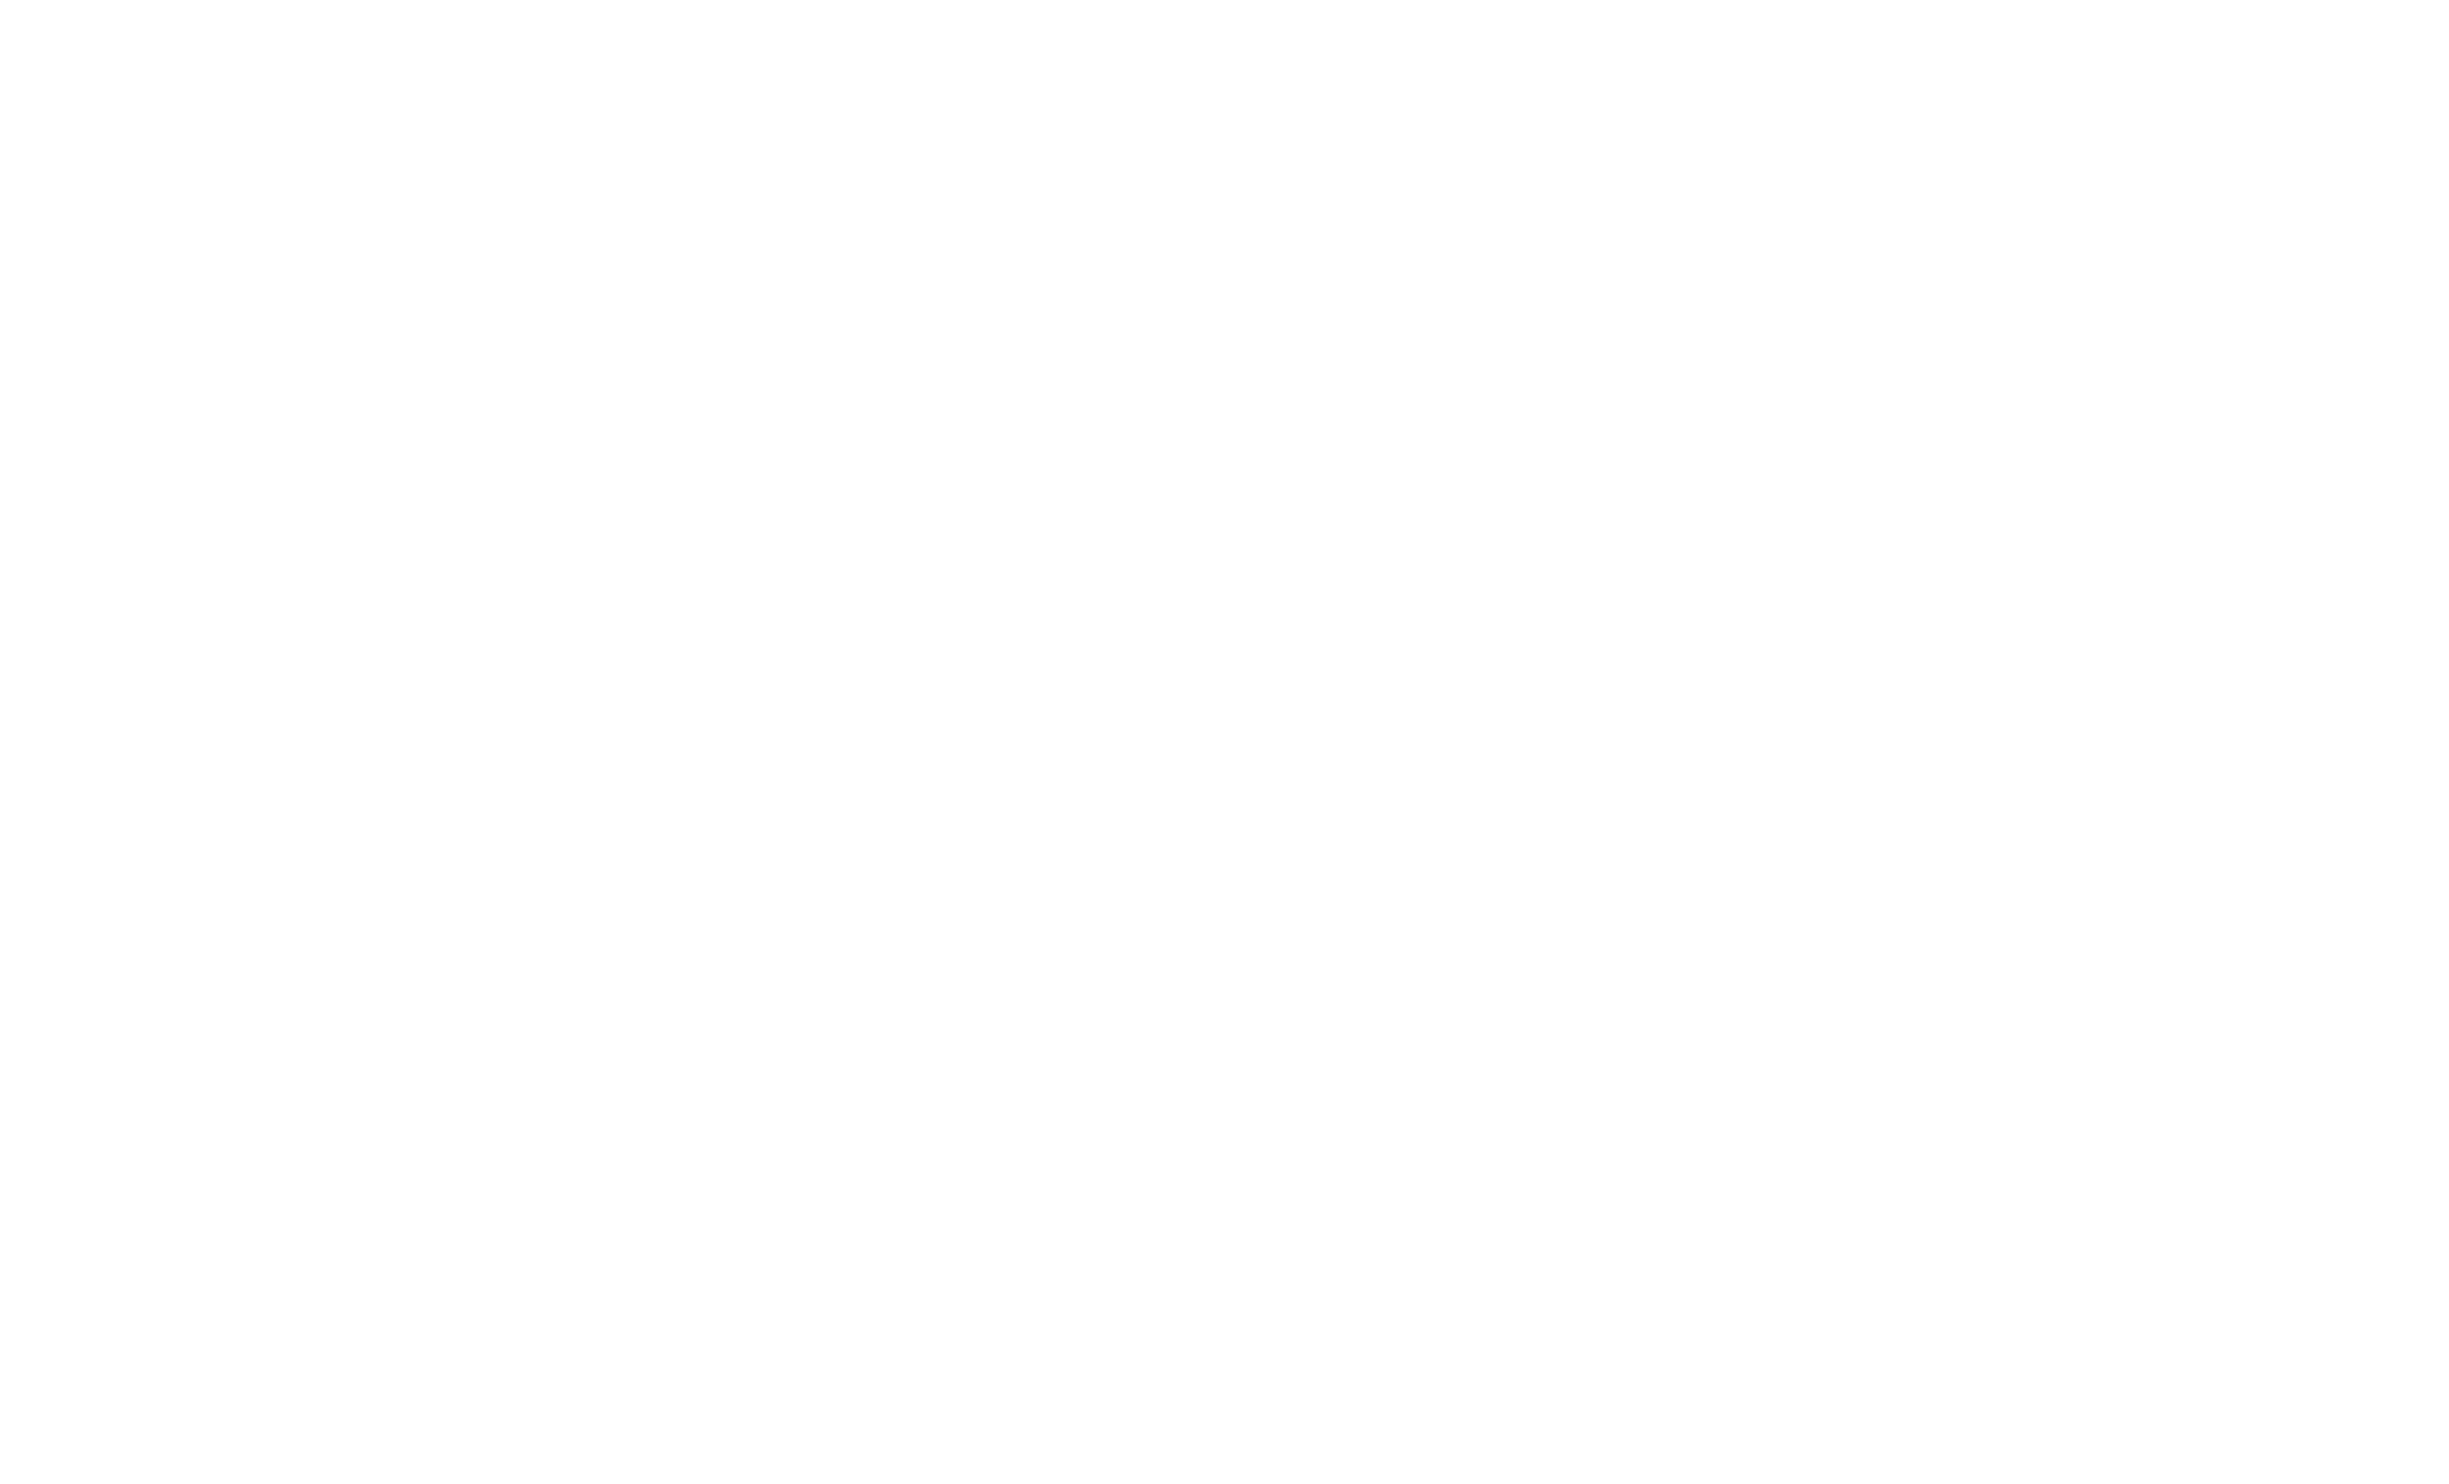 Colgan Creek